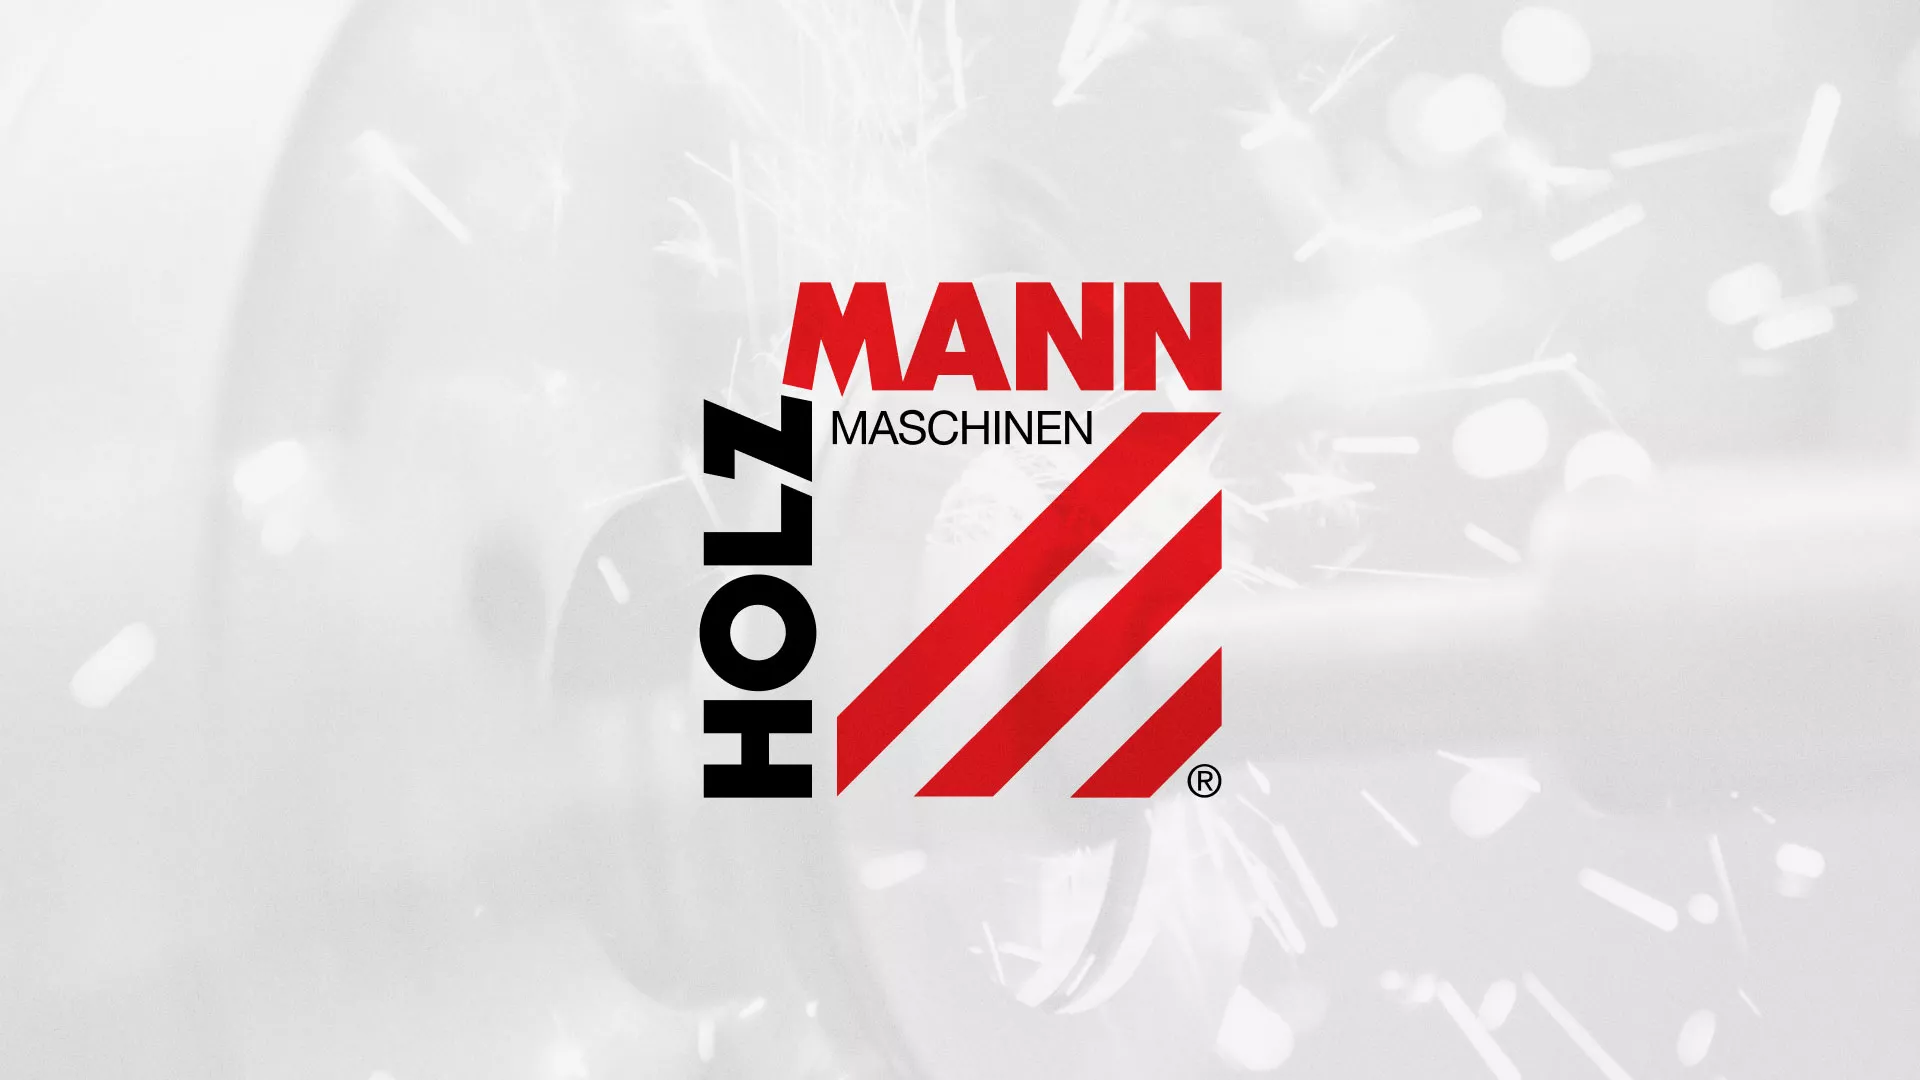 Создание сайта компании «HOLZMANN Maschinen GmbH» в Сочи